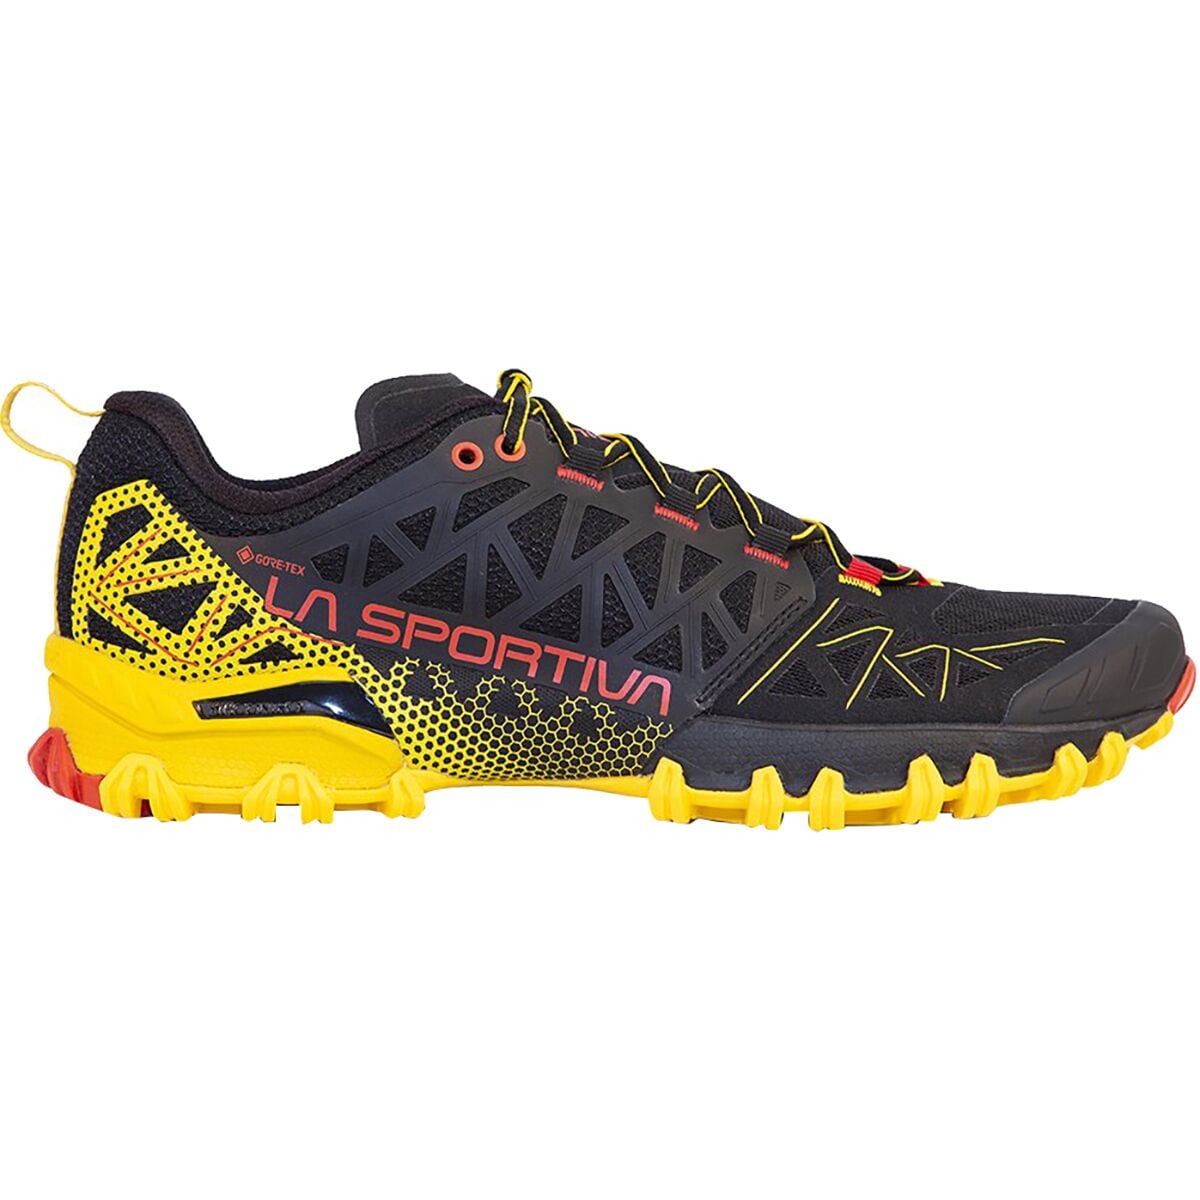 Bushido II GTX Trail Running Shoe - Men